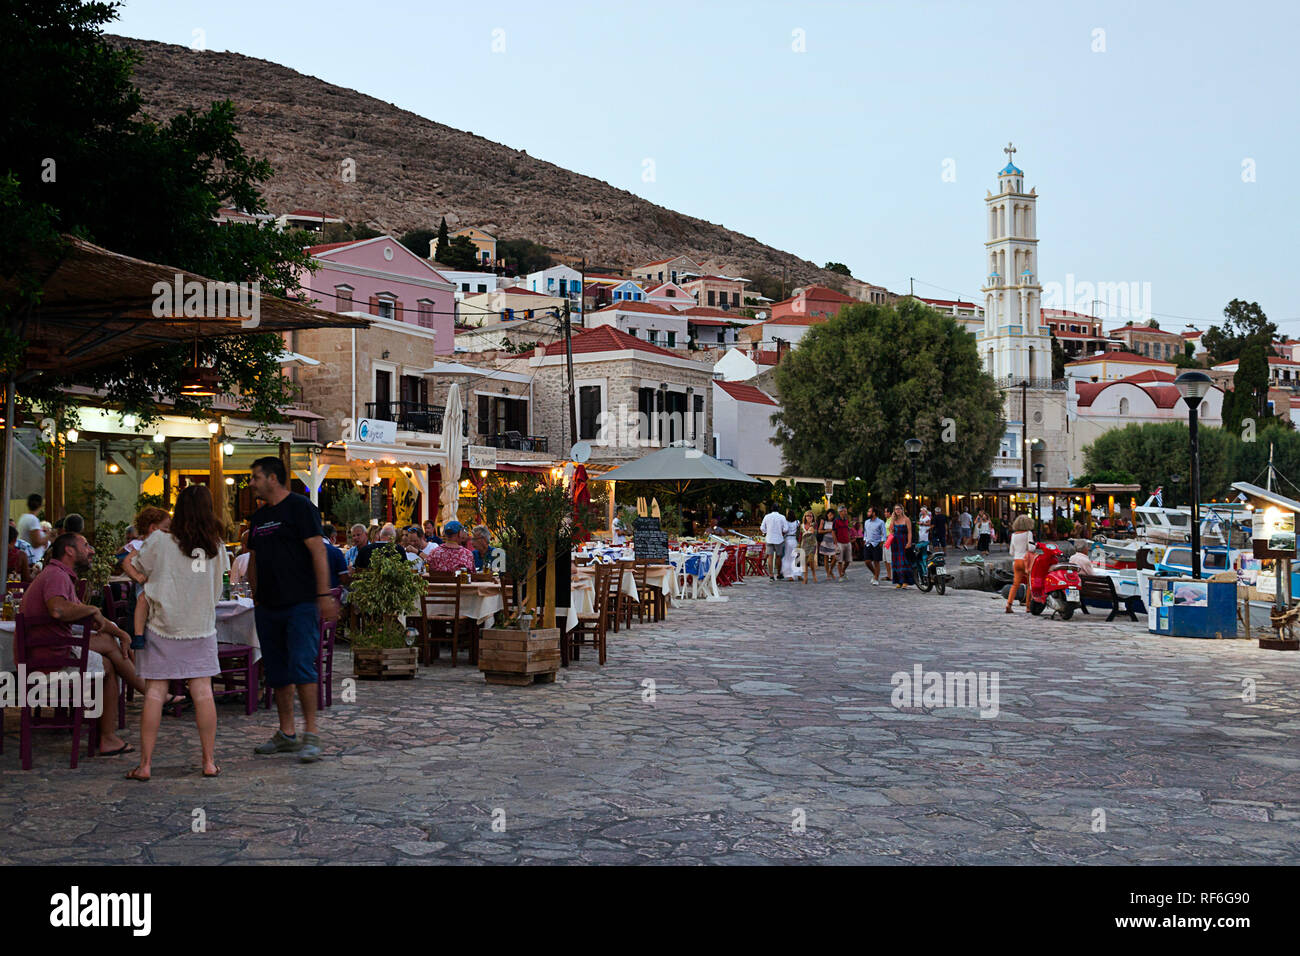 L'île de Halki, Grèce - 27 août 2018. Les gens marchent sur la promenade du front de mer, plein de restaurants tavernes grecques traditionnelles. Est la plus petite de Halki Banque D'Images